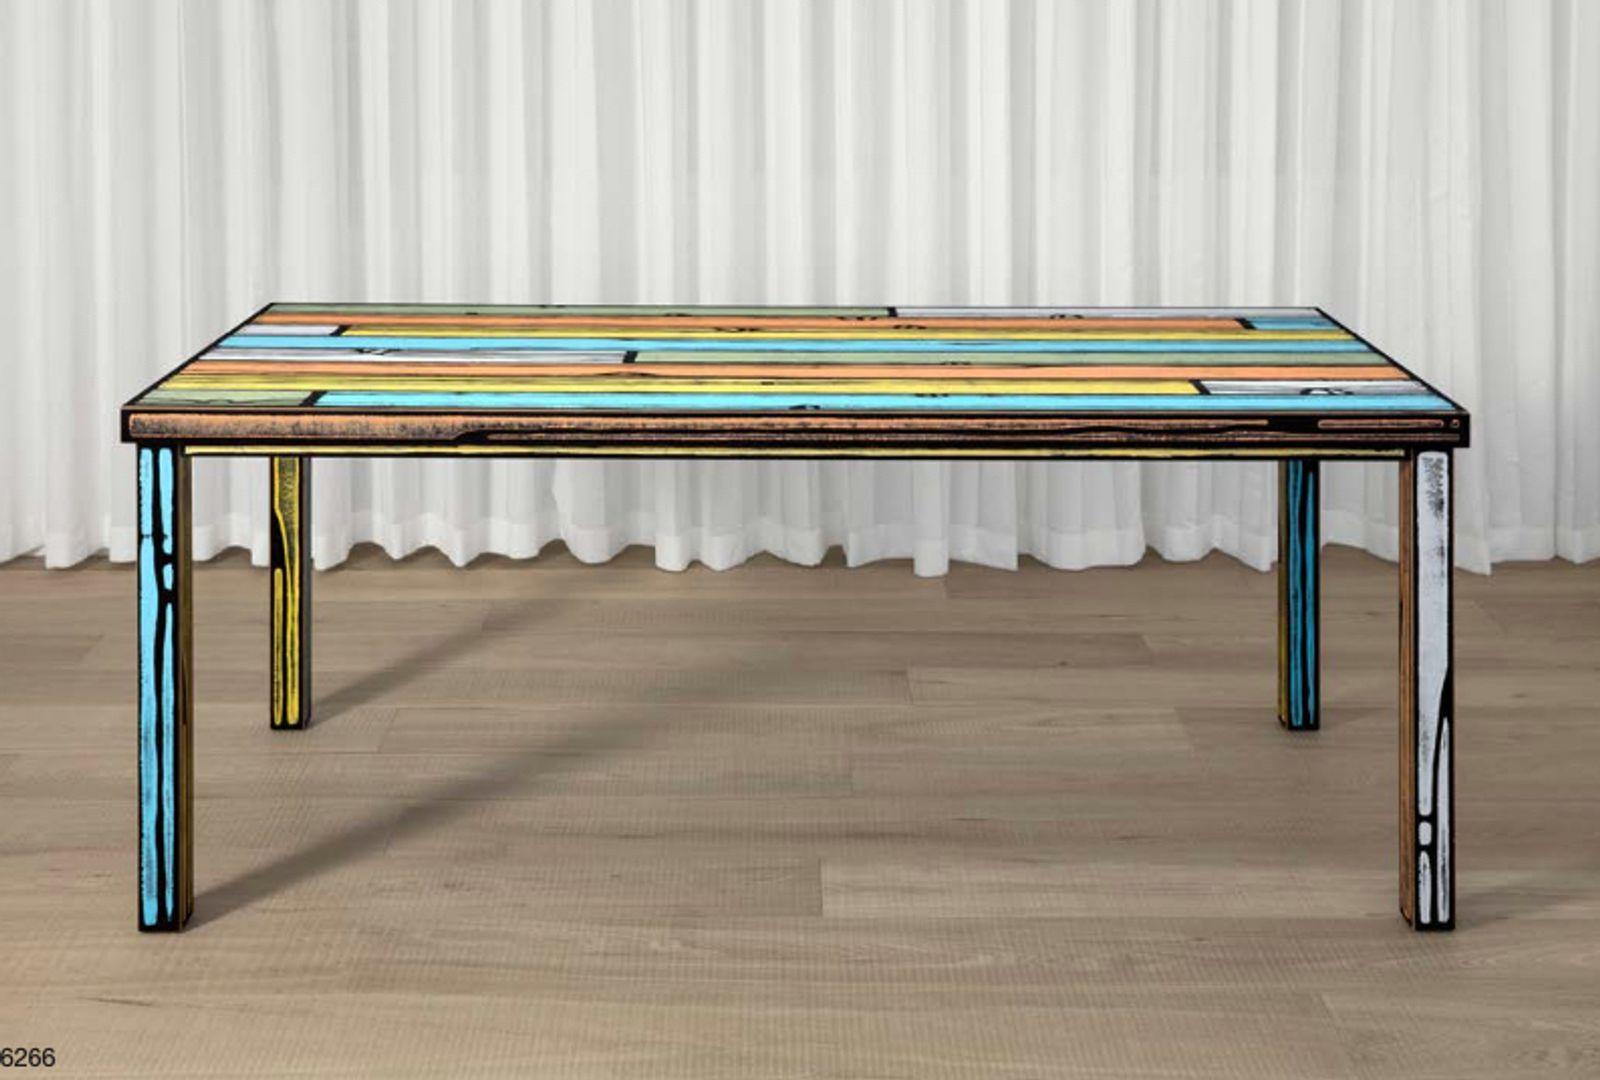 Les blocs de bois colorés de Richard Woods sont appliqués sur les meubles utilitaires de Sebastian Wrong - qui rappellent les modèles du milieu du siècle dernier - dans cette collaboration séminale entre l'artiste et le designer.

RICHARD